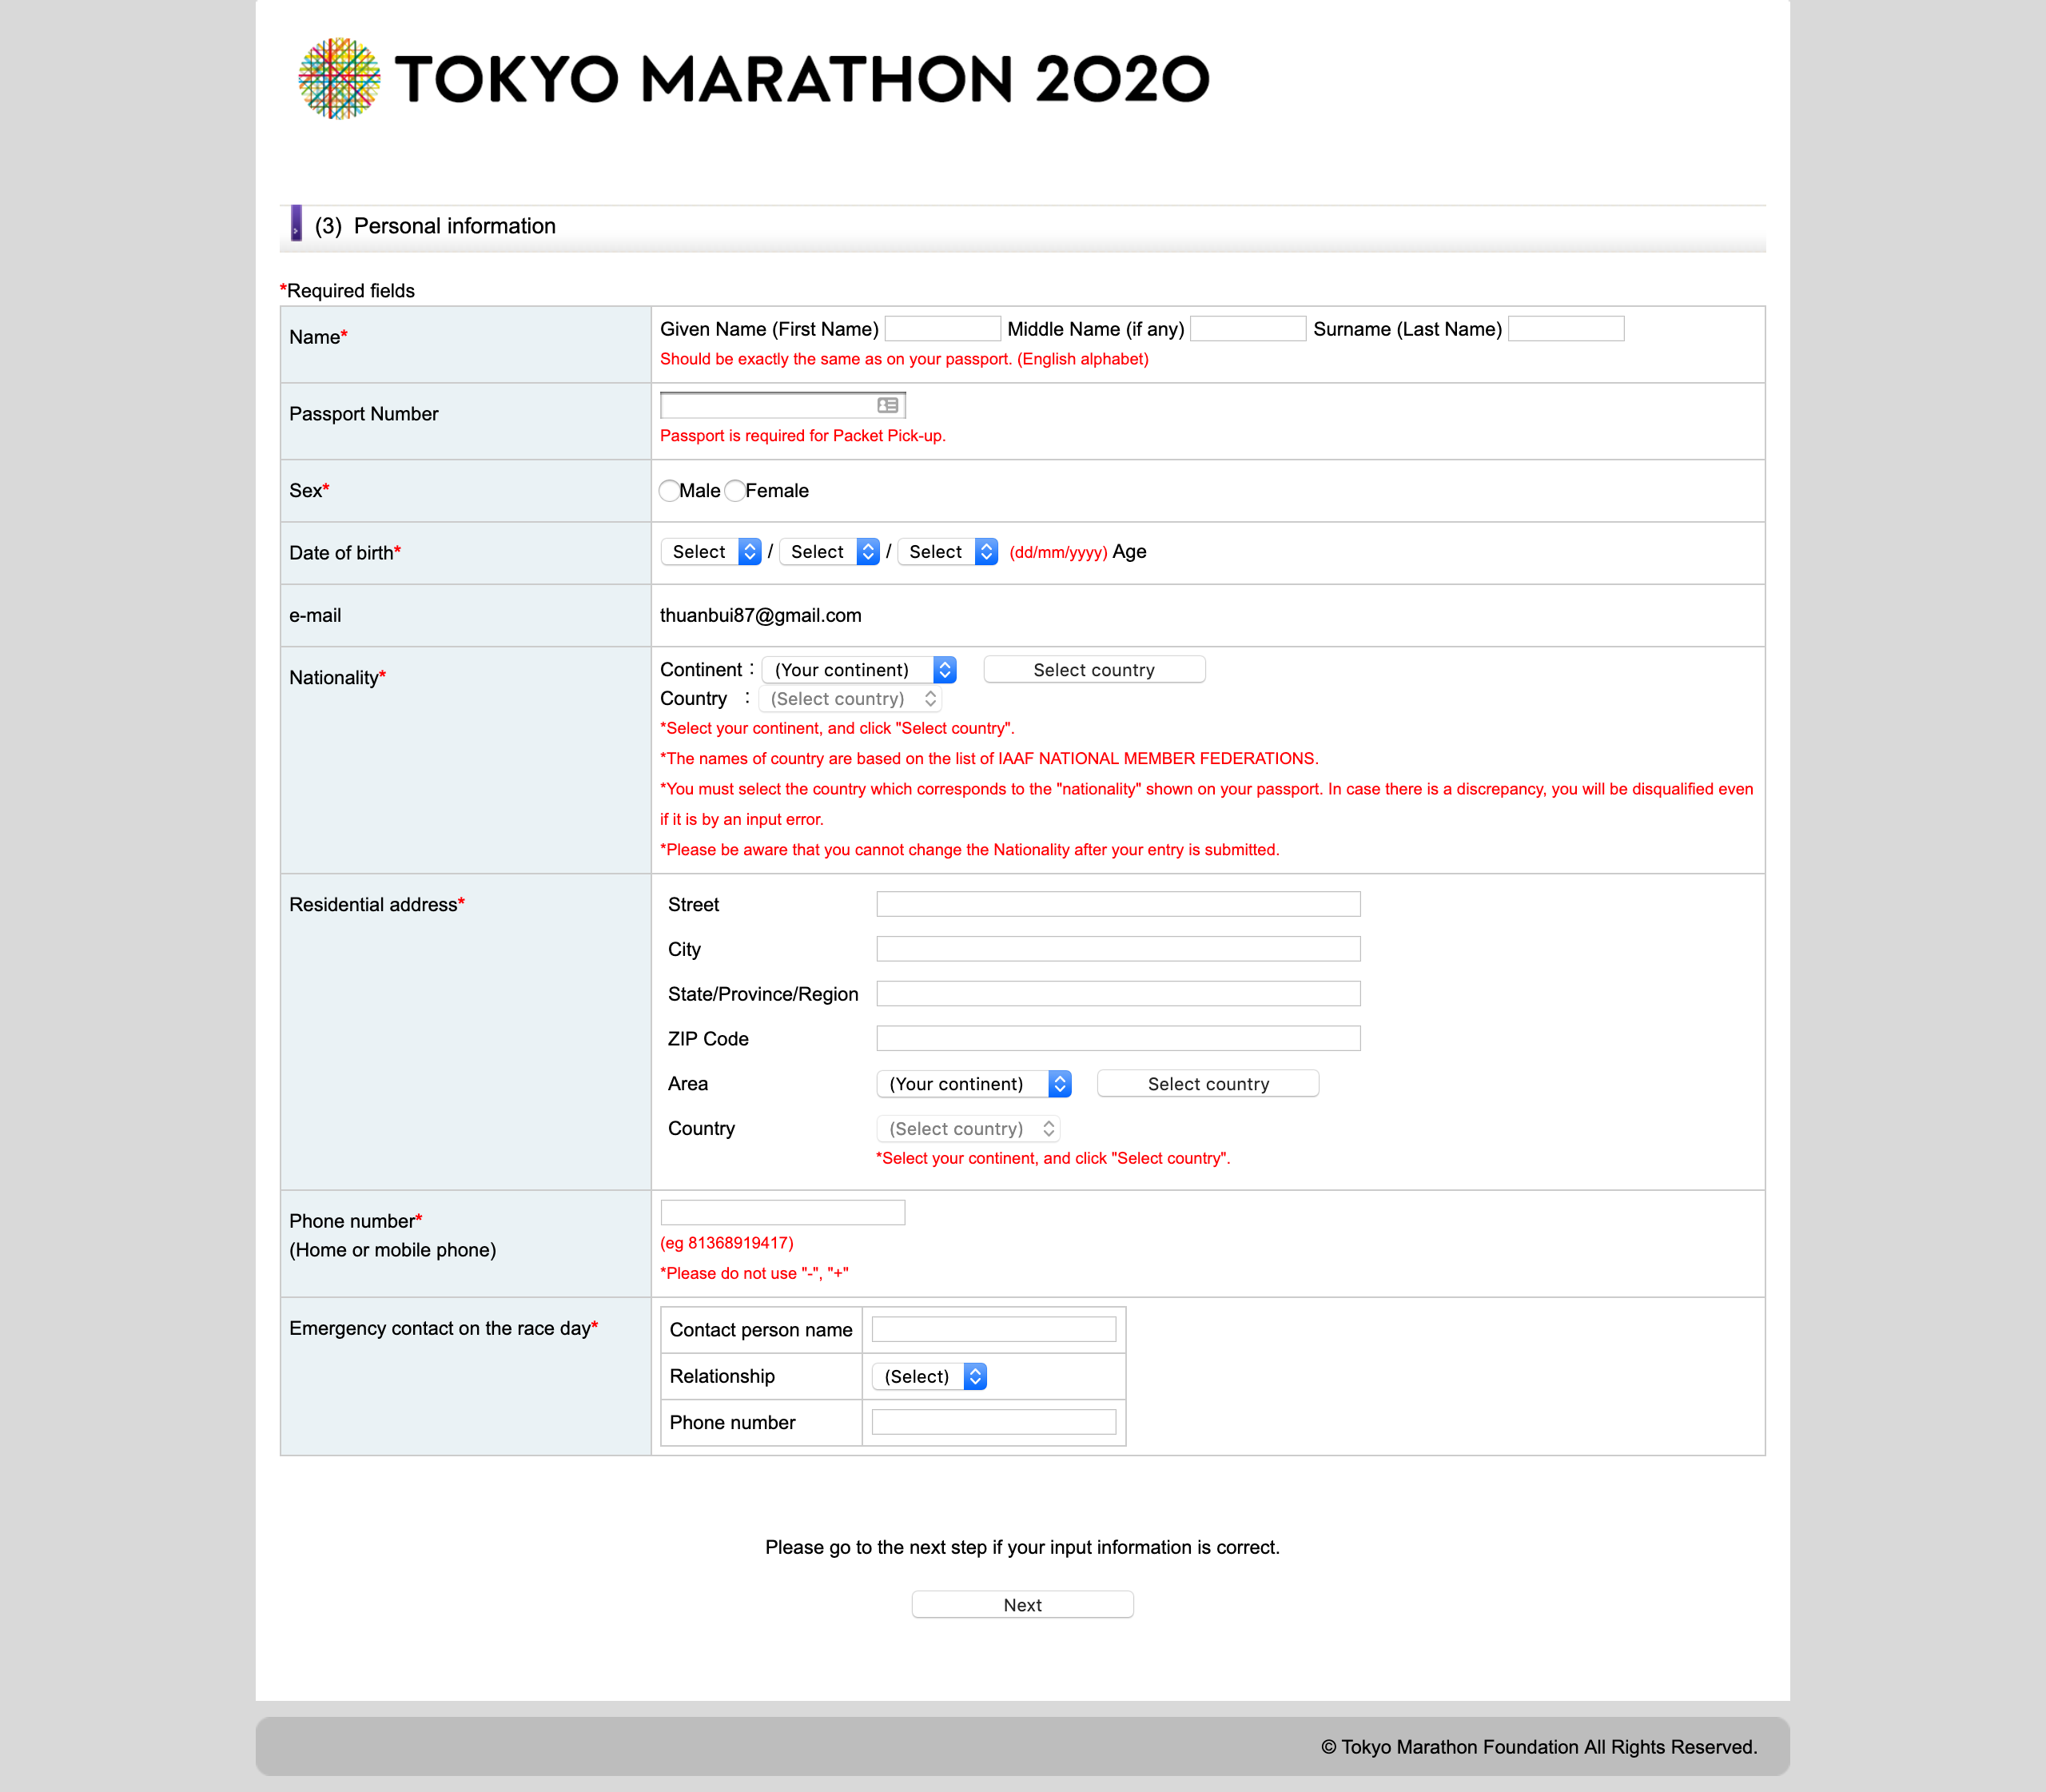 Hướng dẫn đăng ký xổ số dành suất tham gia Tokyo Marathon 2020 - dang ky tokyo marathon 2020 5